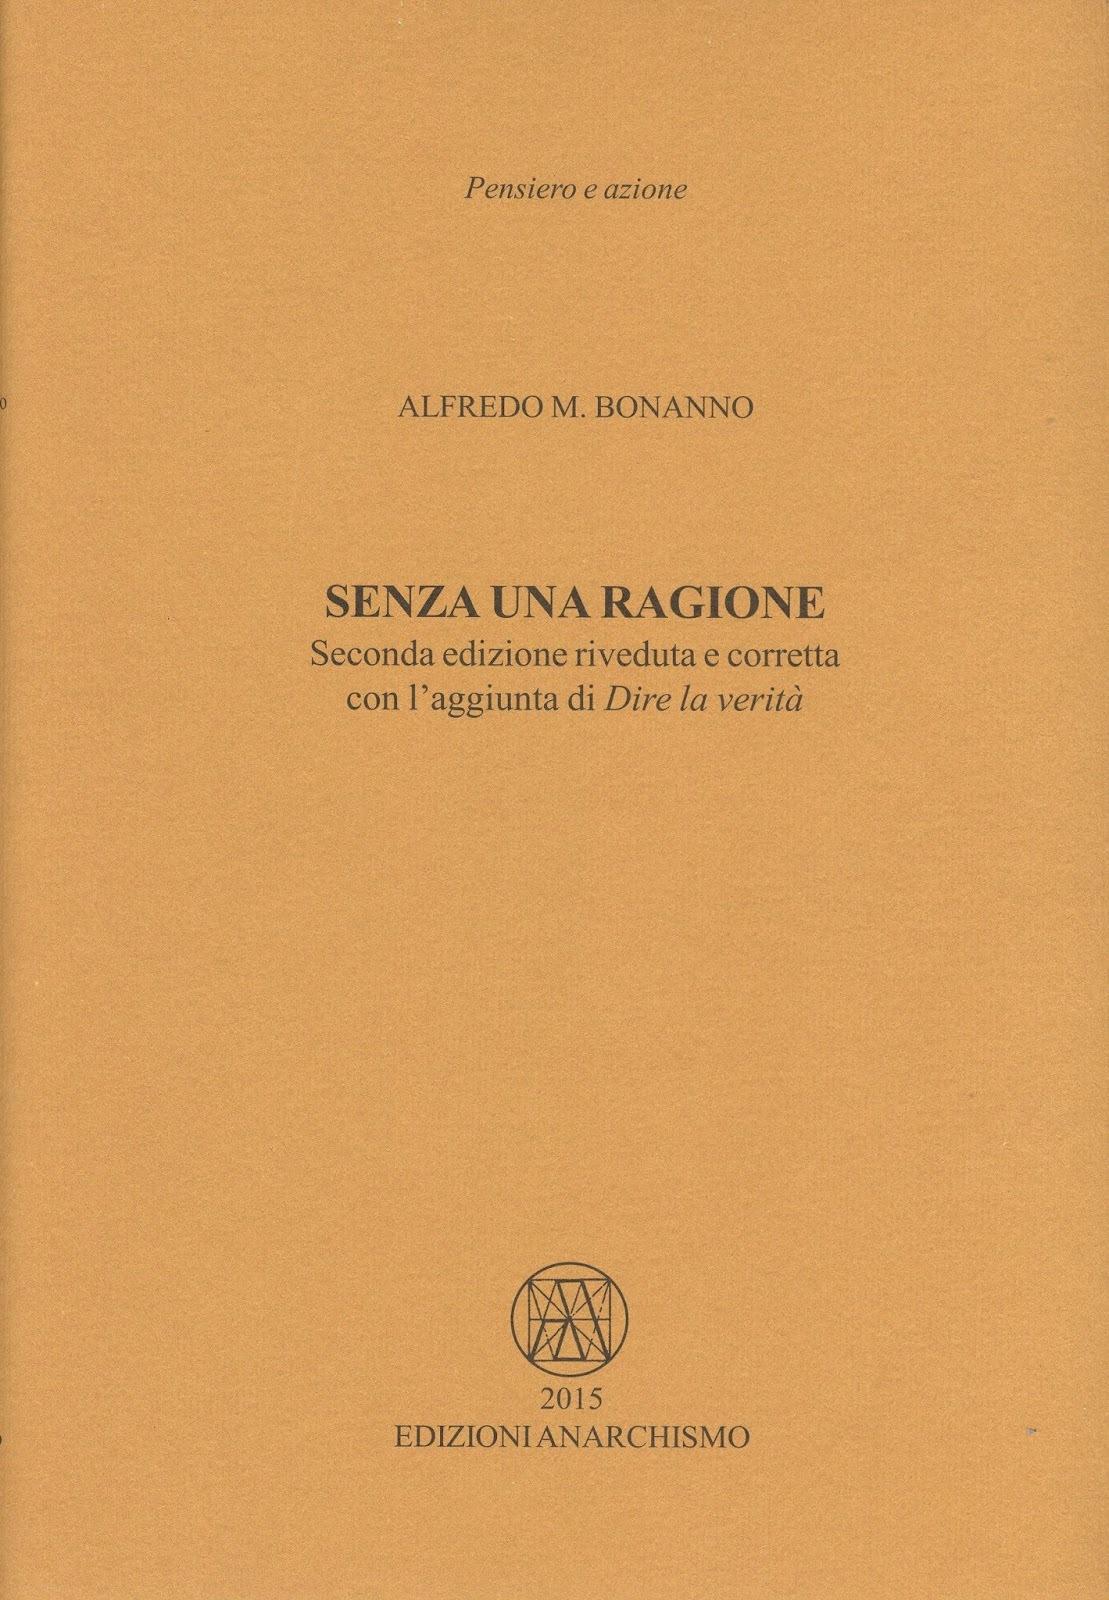 Alfredo Maria Bonanno: Senza una ragione (Paperback, italiano language, 2015, Edizioni Anarchismo)